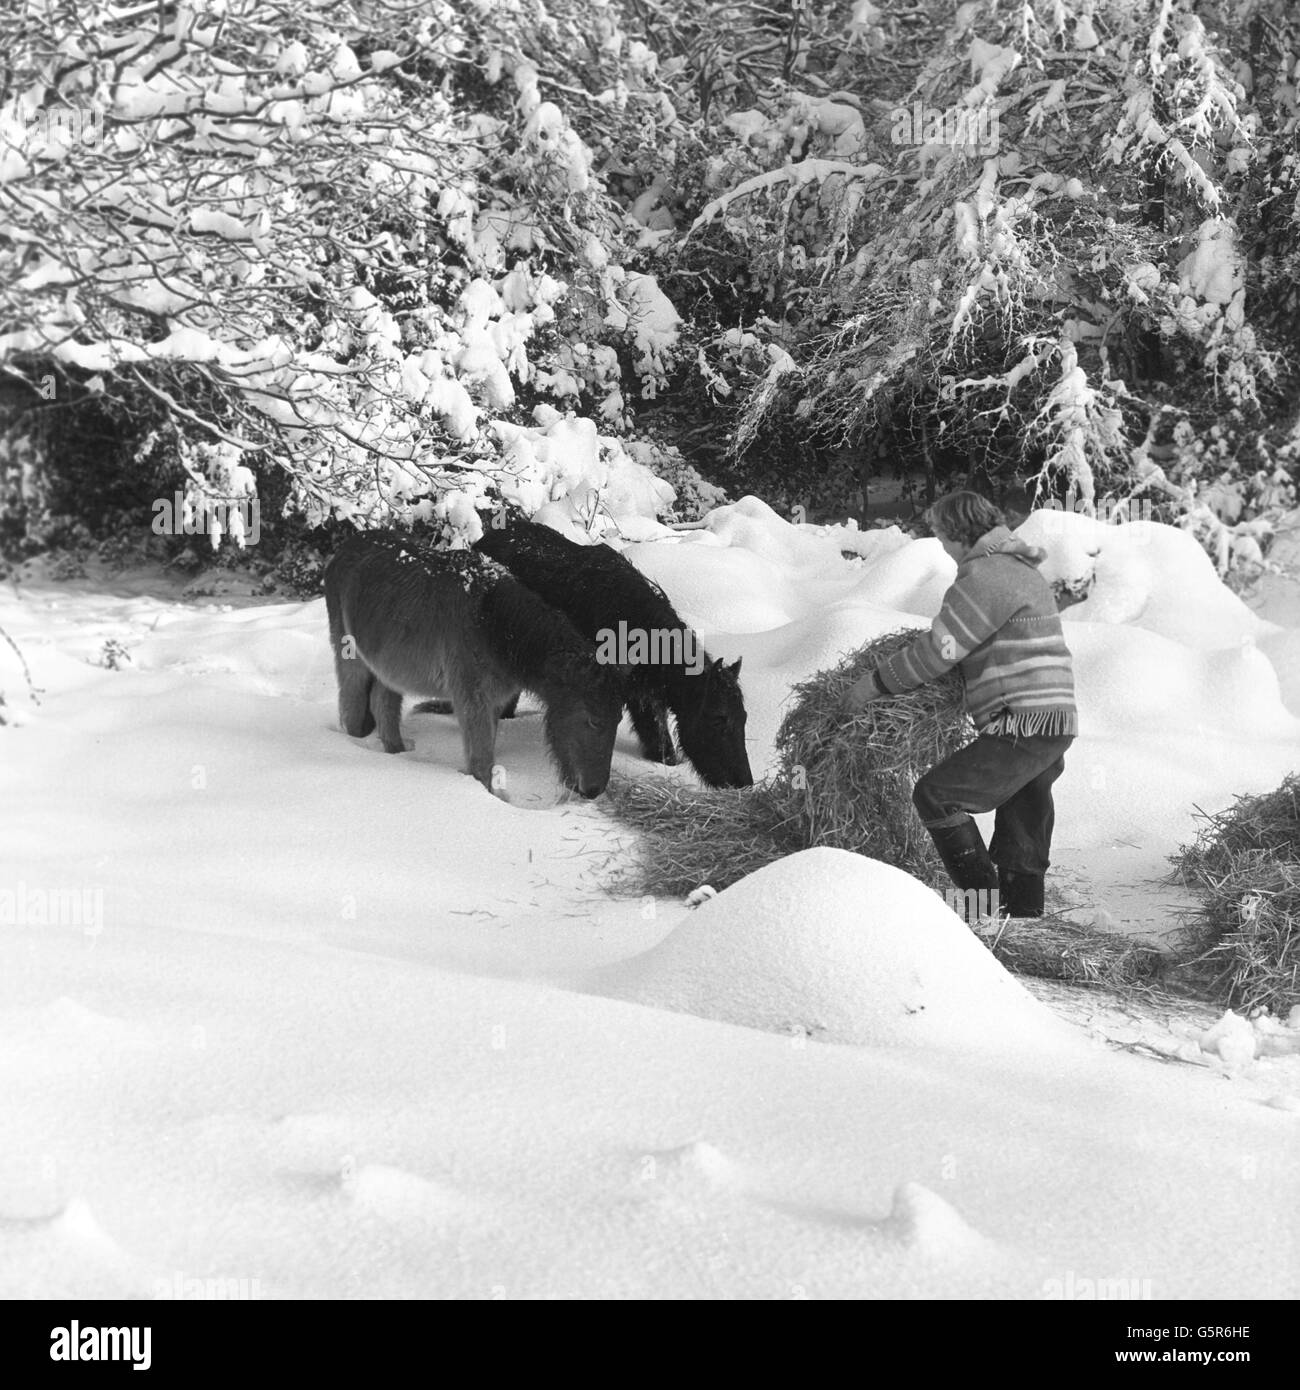 Ponys aus dem New Forest fressen Futter unter schneebedeckten Bäumen. Eine Gruppe von Freiwilligen arbeitet mit der RSPCA zusammen, um Ponys, die aufgrund des schlechten Wetters unter Hungergefahr stehen, Nahrung zu bringen. Stockfoto